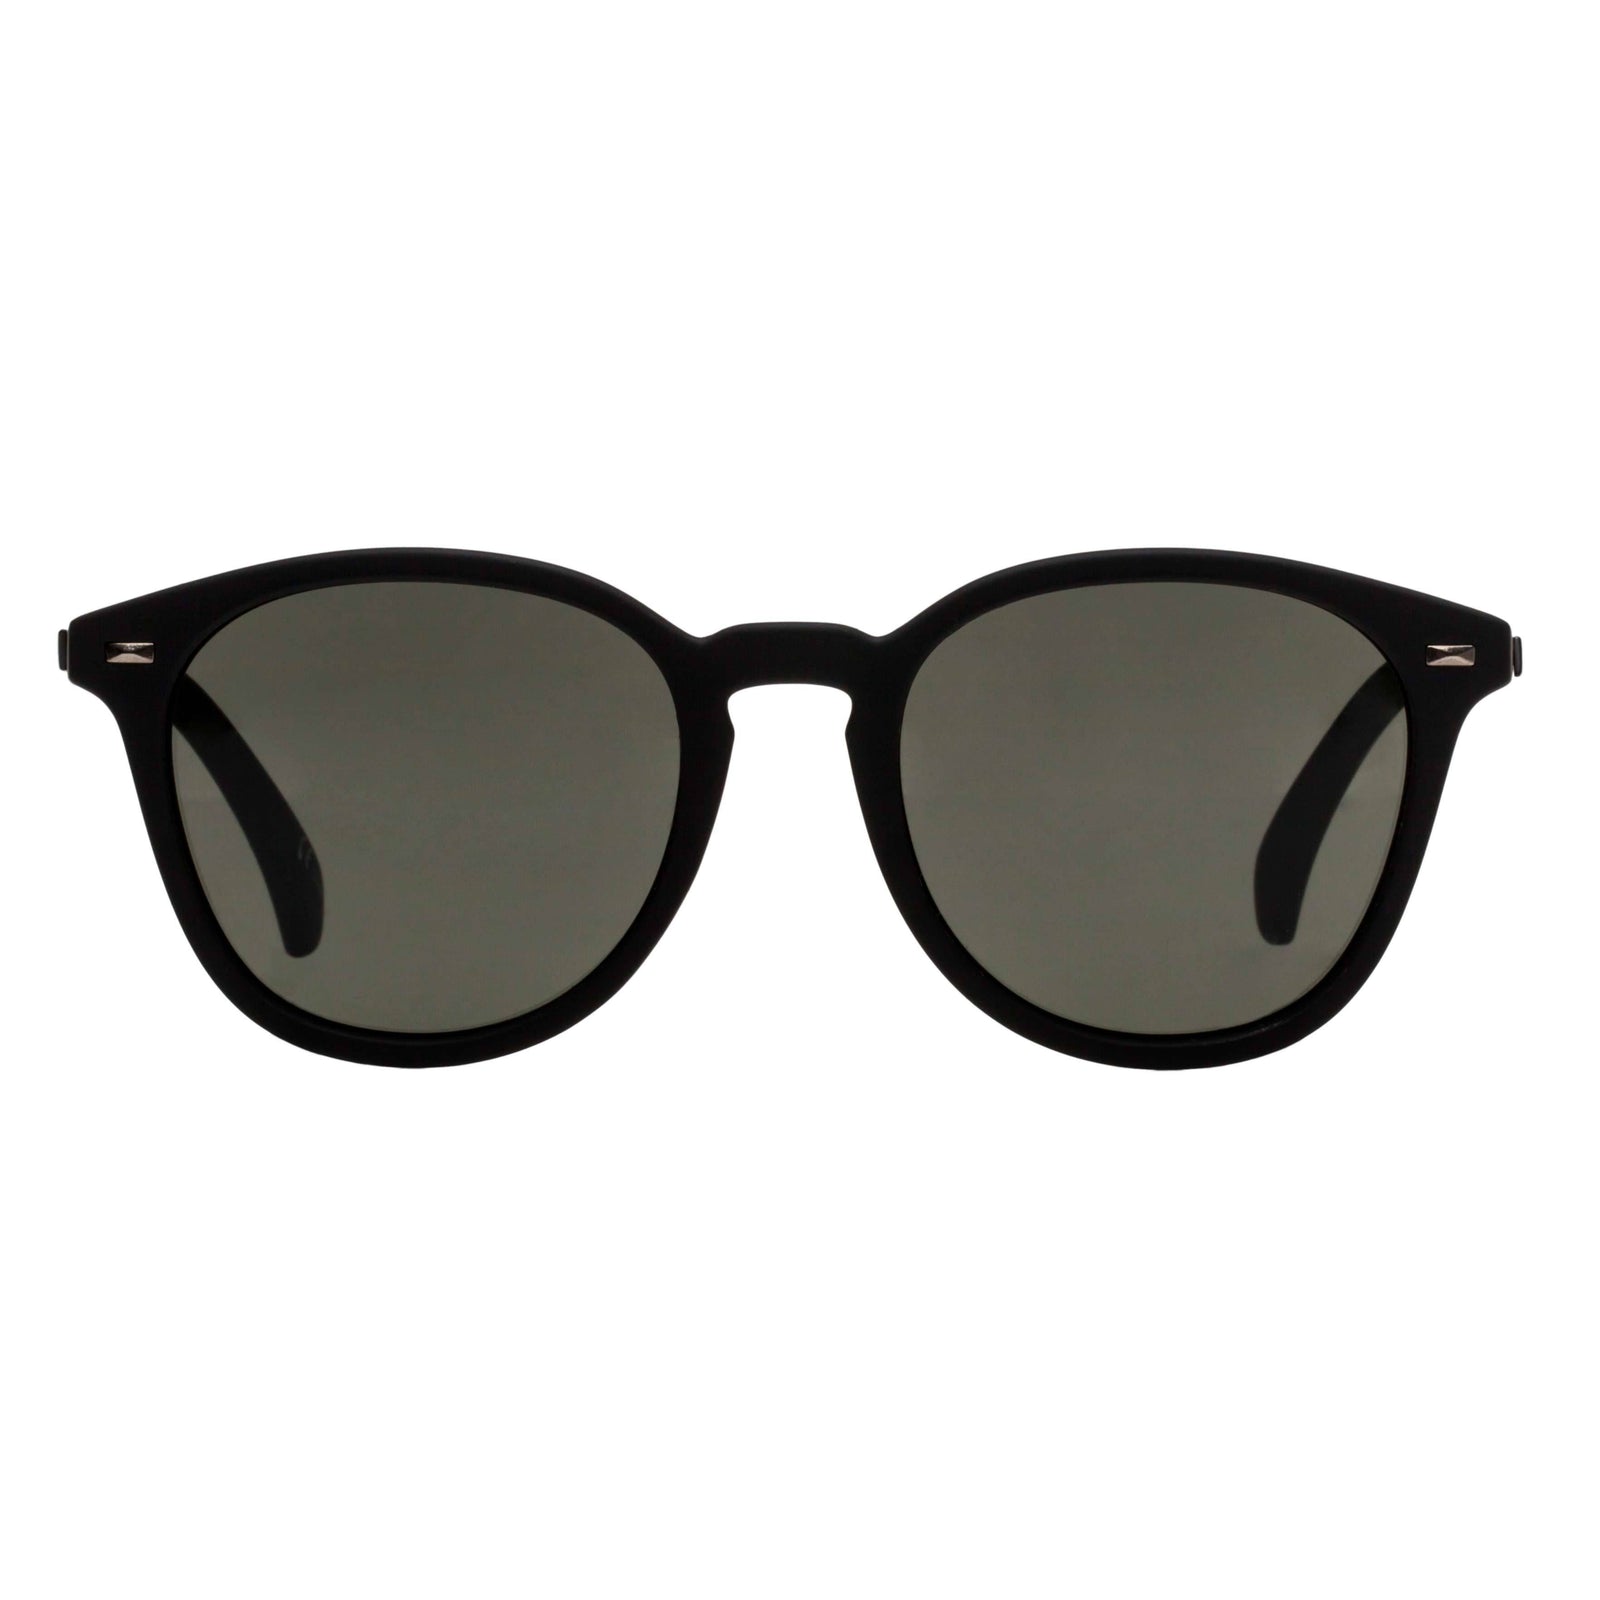 Bandwagon Black Tort Uni-Sex Round Sunglasses | Le Specs | Sonnenbrillen